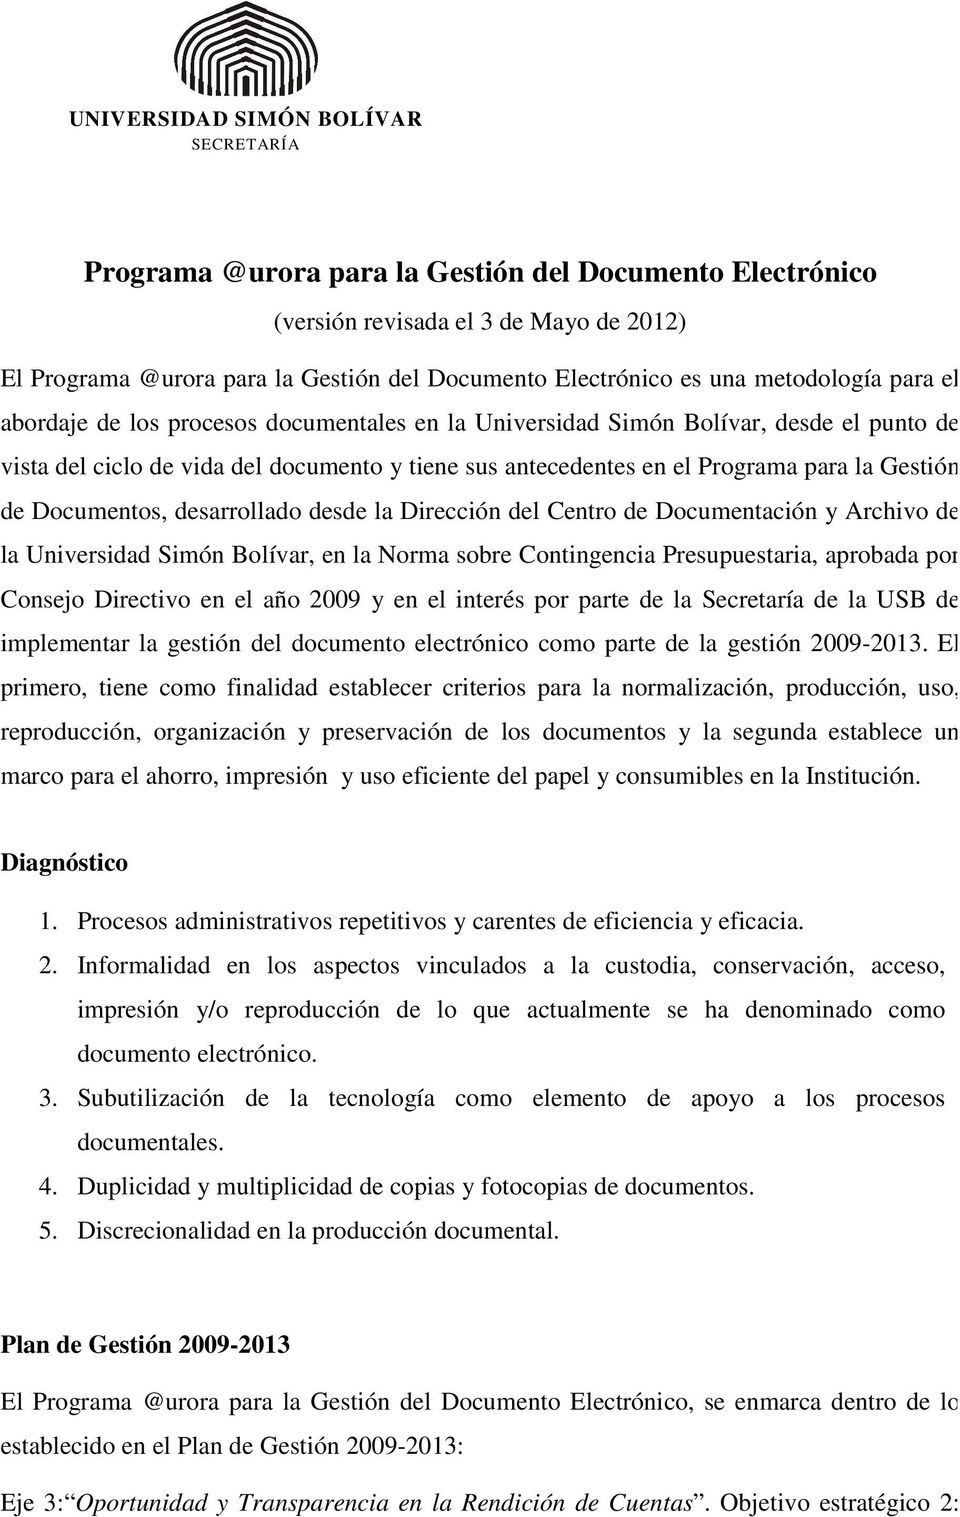 Gestión de Documentos, desarrollado desde la Dirección del Centro de Documentación y Archivo de la Universidad Simón Bolívar, en la Norma sobre Contingencia Presupuestaria, aprobada por Consejo